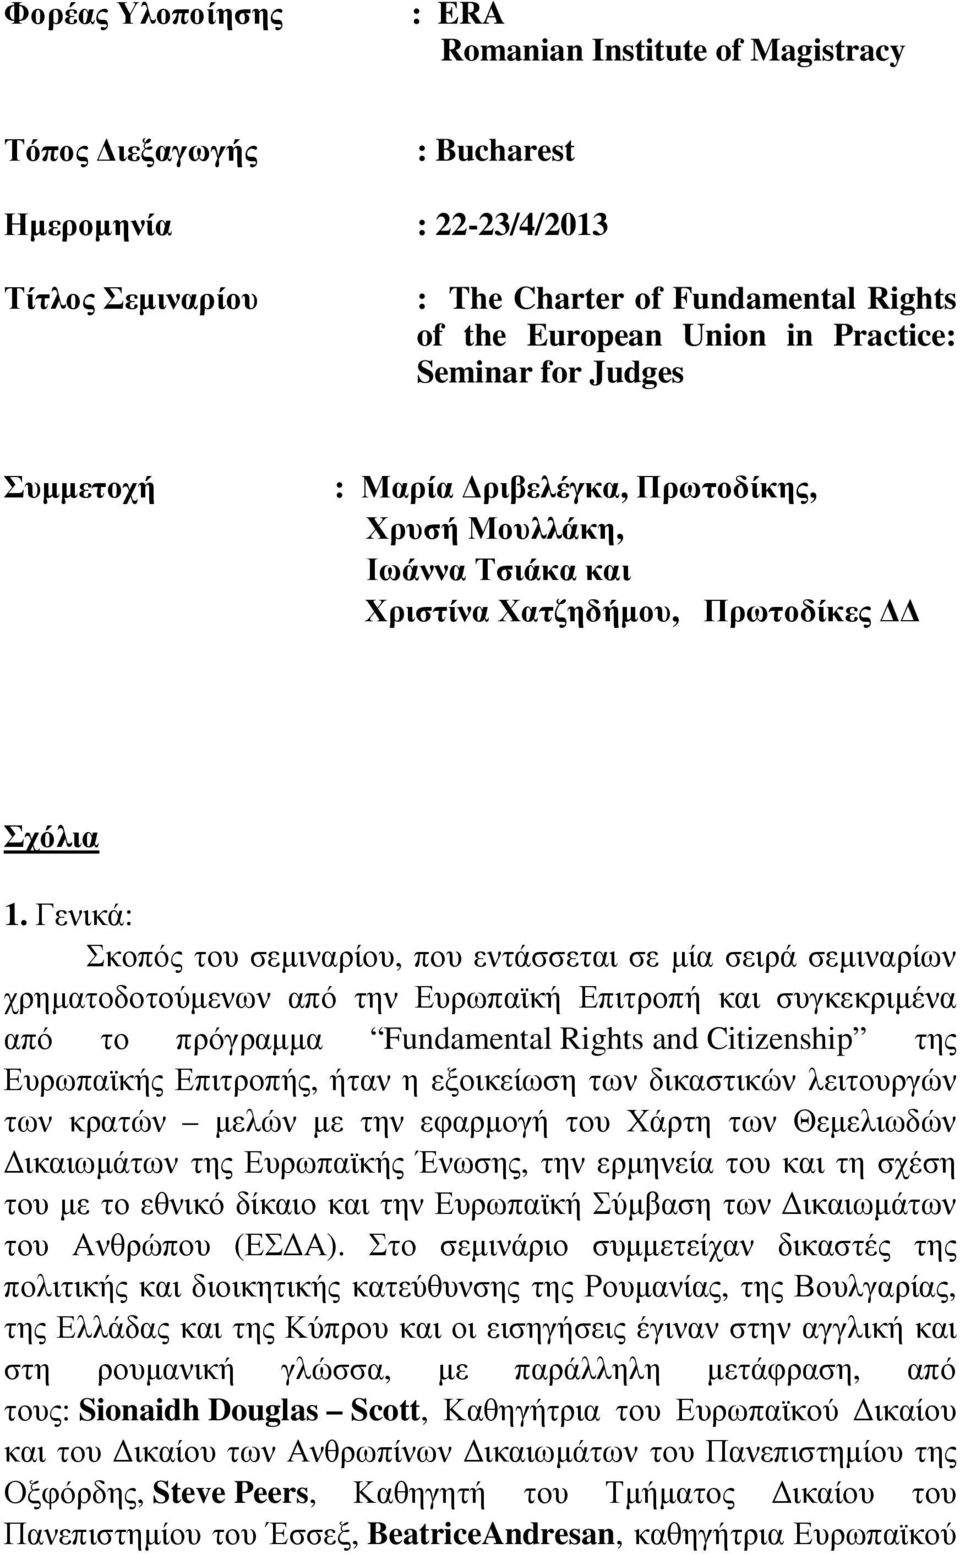 Γενικά: Σκοπός του σεµιναρίου, που εντάσσεται σε µία σειρά σεµιναρίων χρηµατοδοτούµενων από την Ευρωπαϊκή Επιτροπή και συγκεκριµένα από το πρόγραµµα Fundamental Rights and Citizenship της Ευρωπαϊκής